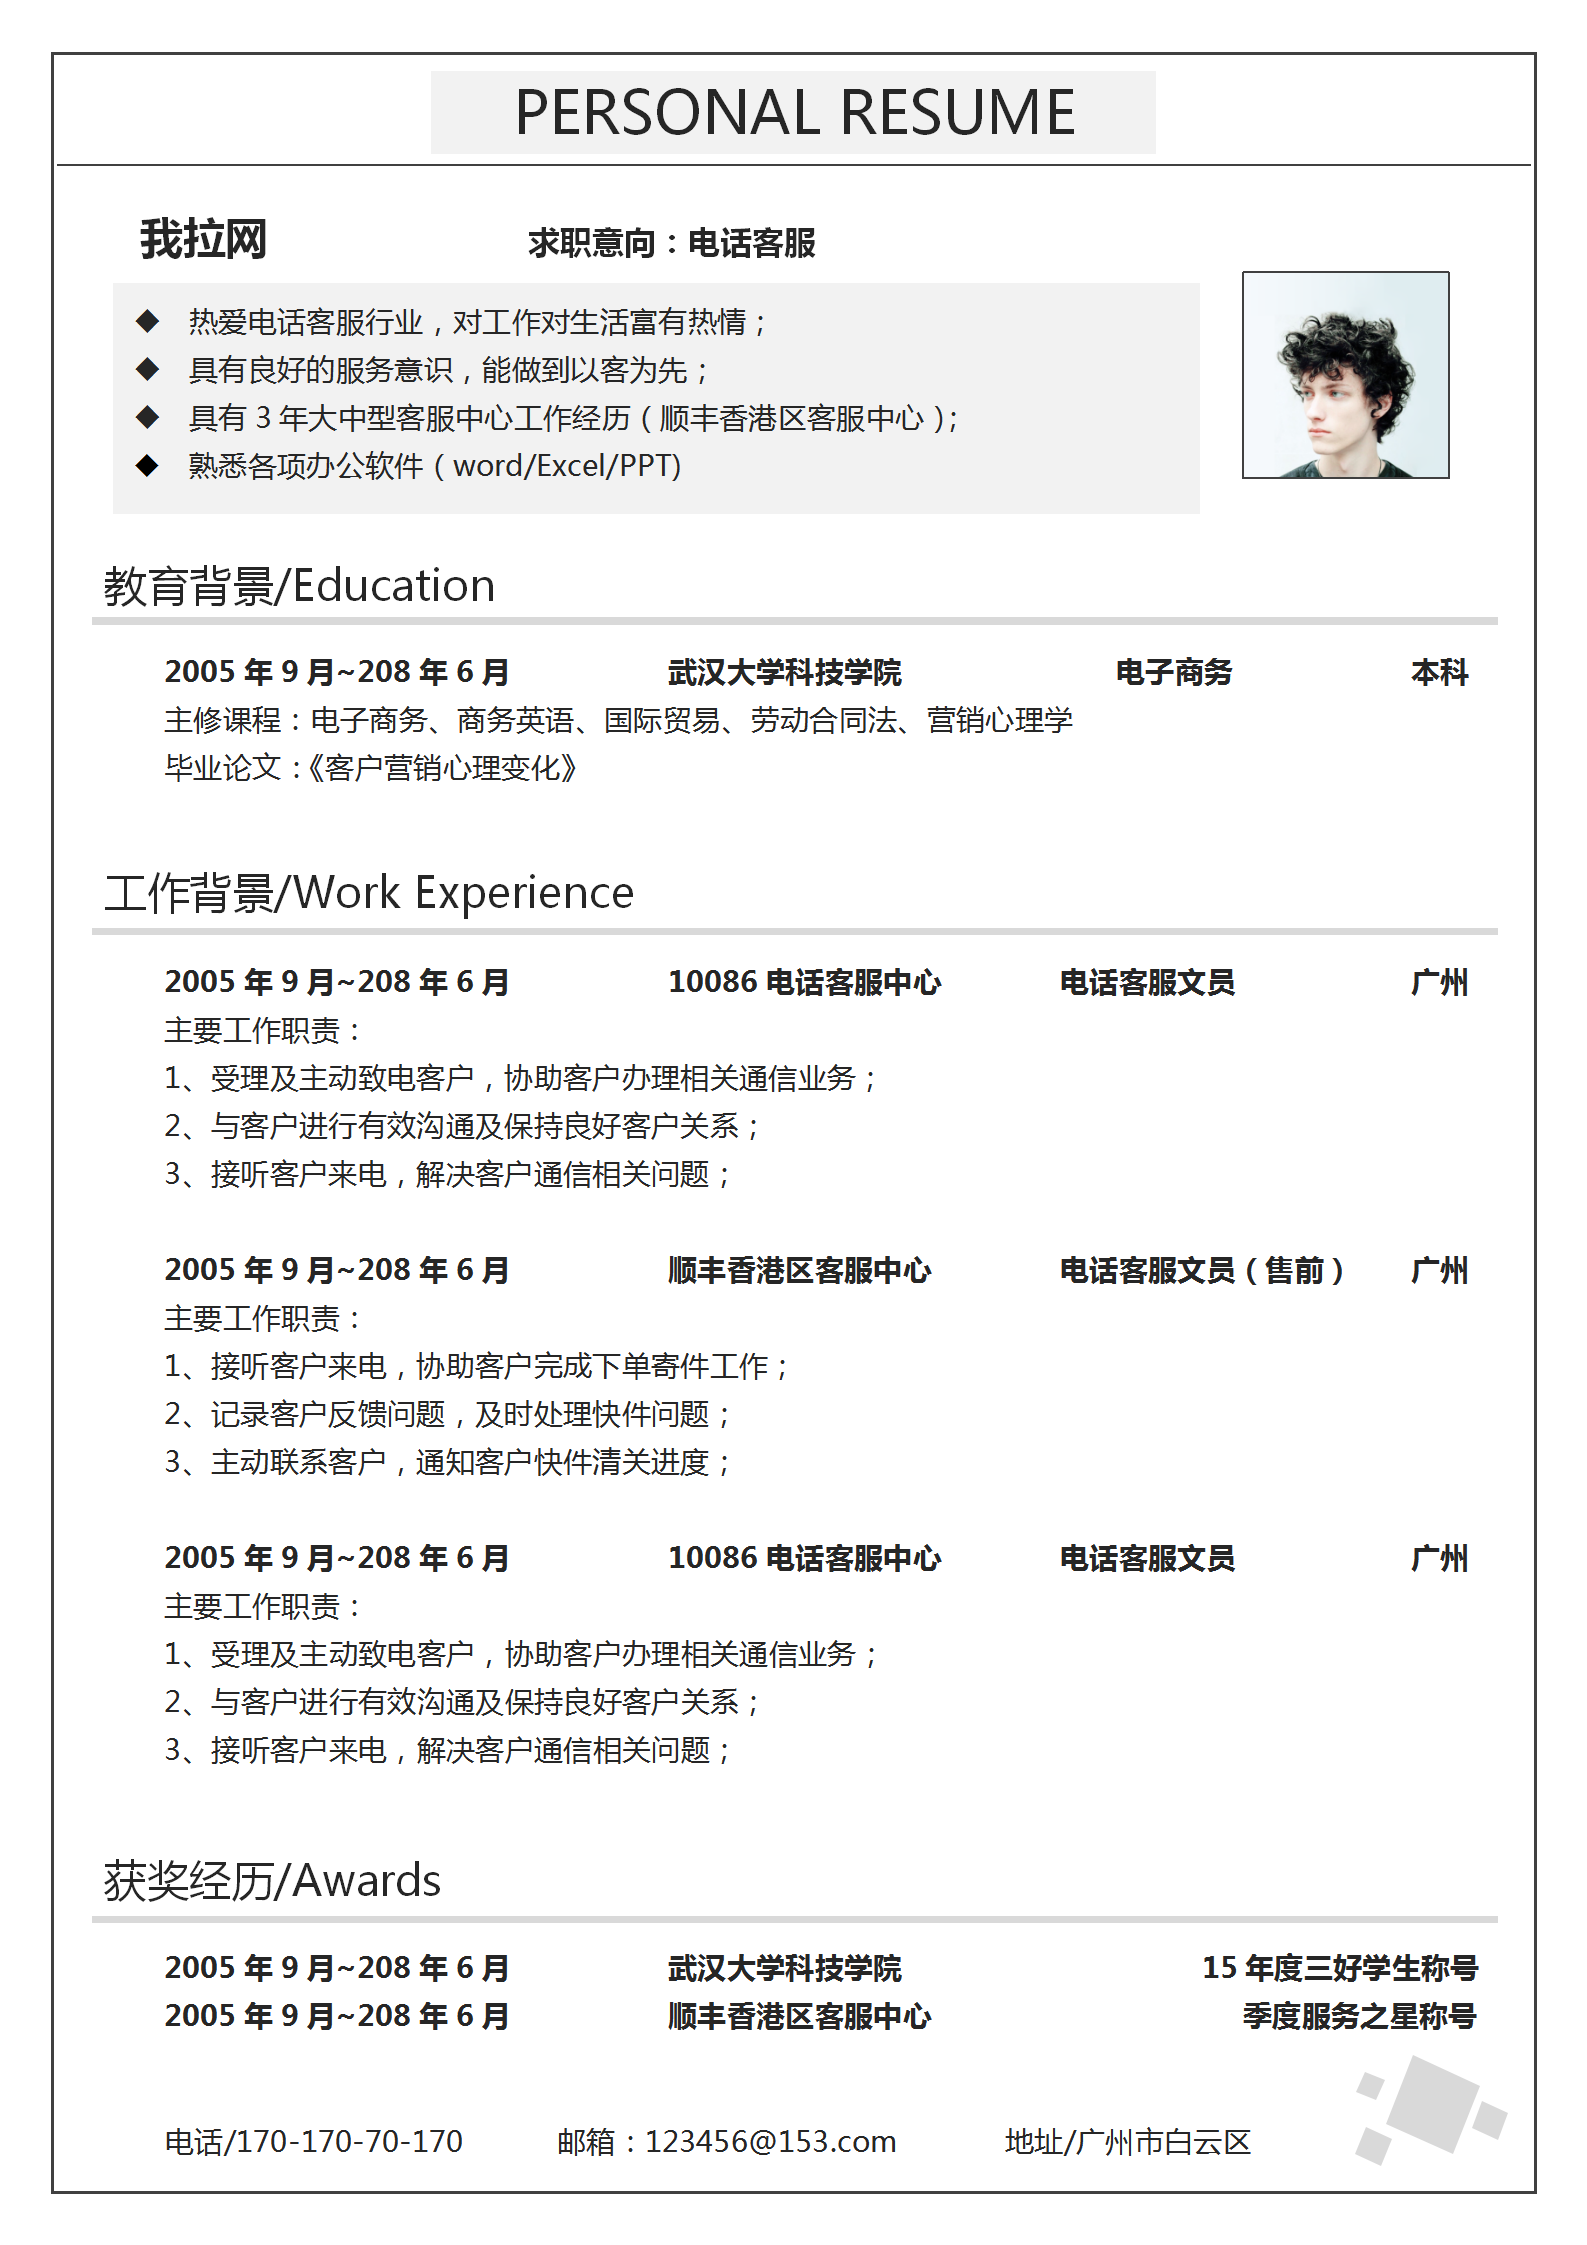 广州客服专员简历范本素材图片下载-素材编号04119456-素材天下图库